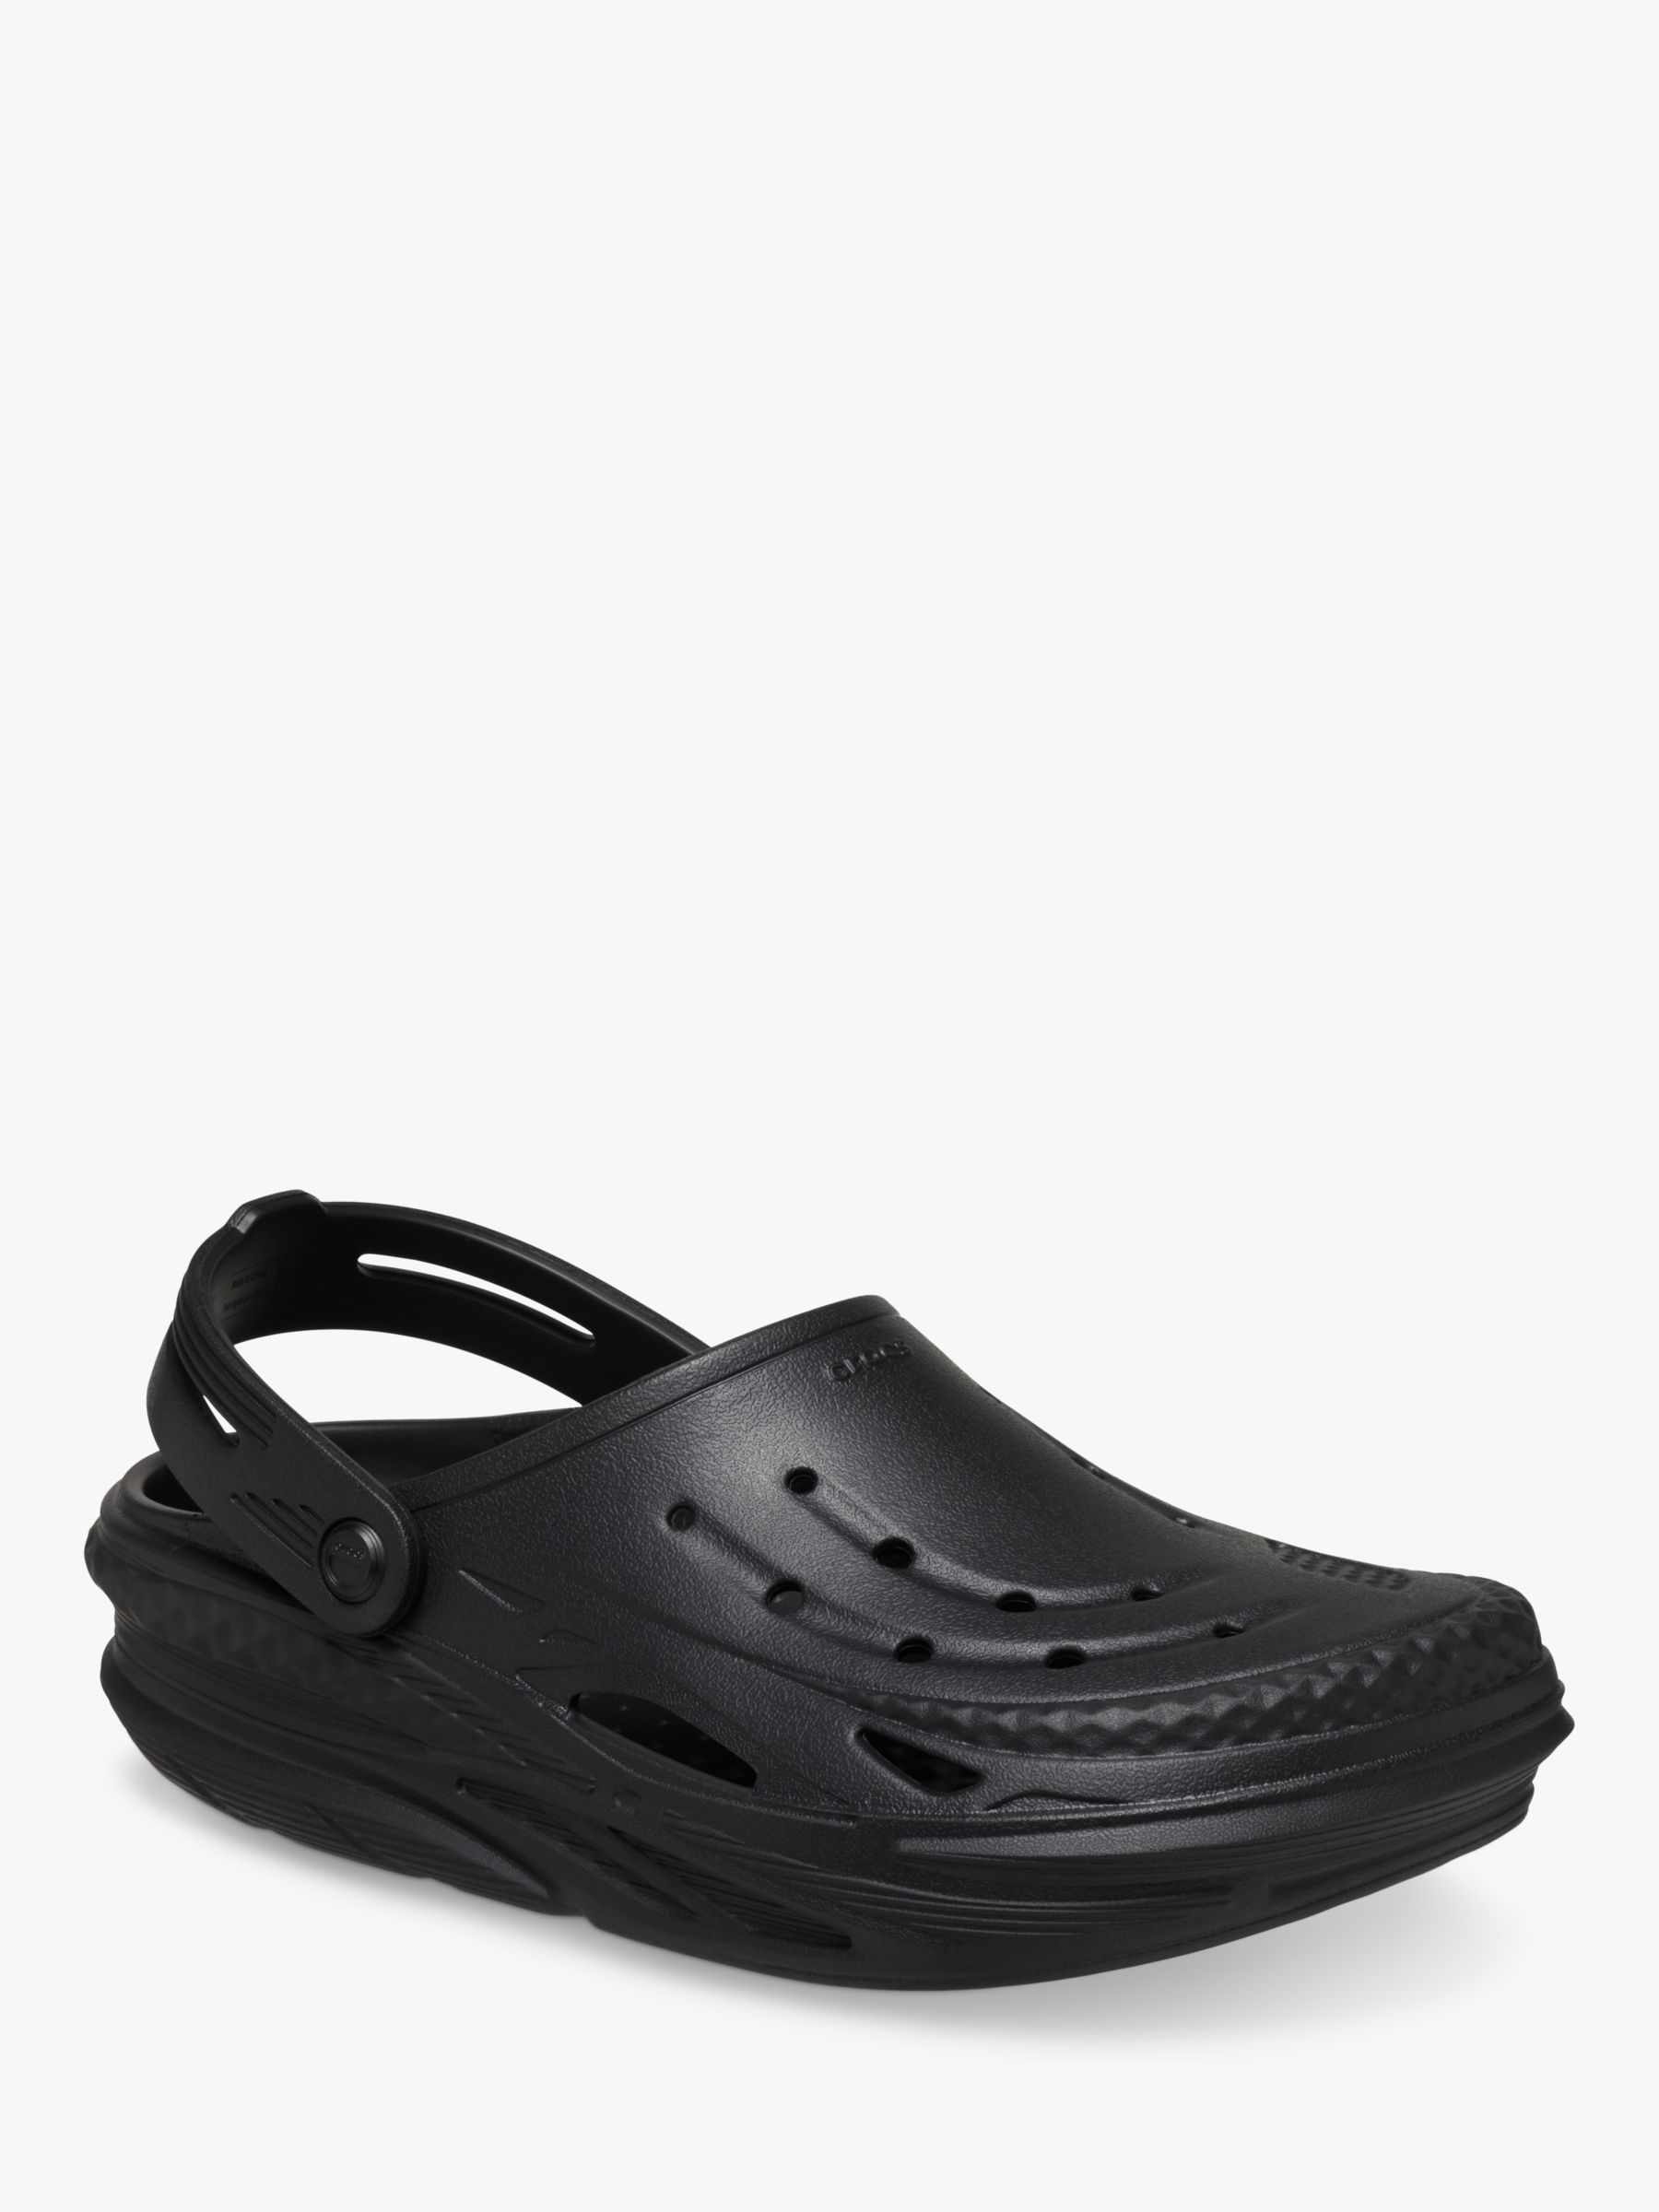 Crocs Off Grid Clog, Black, 9